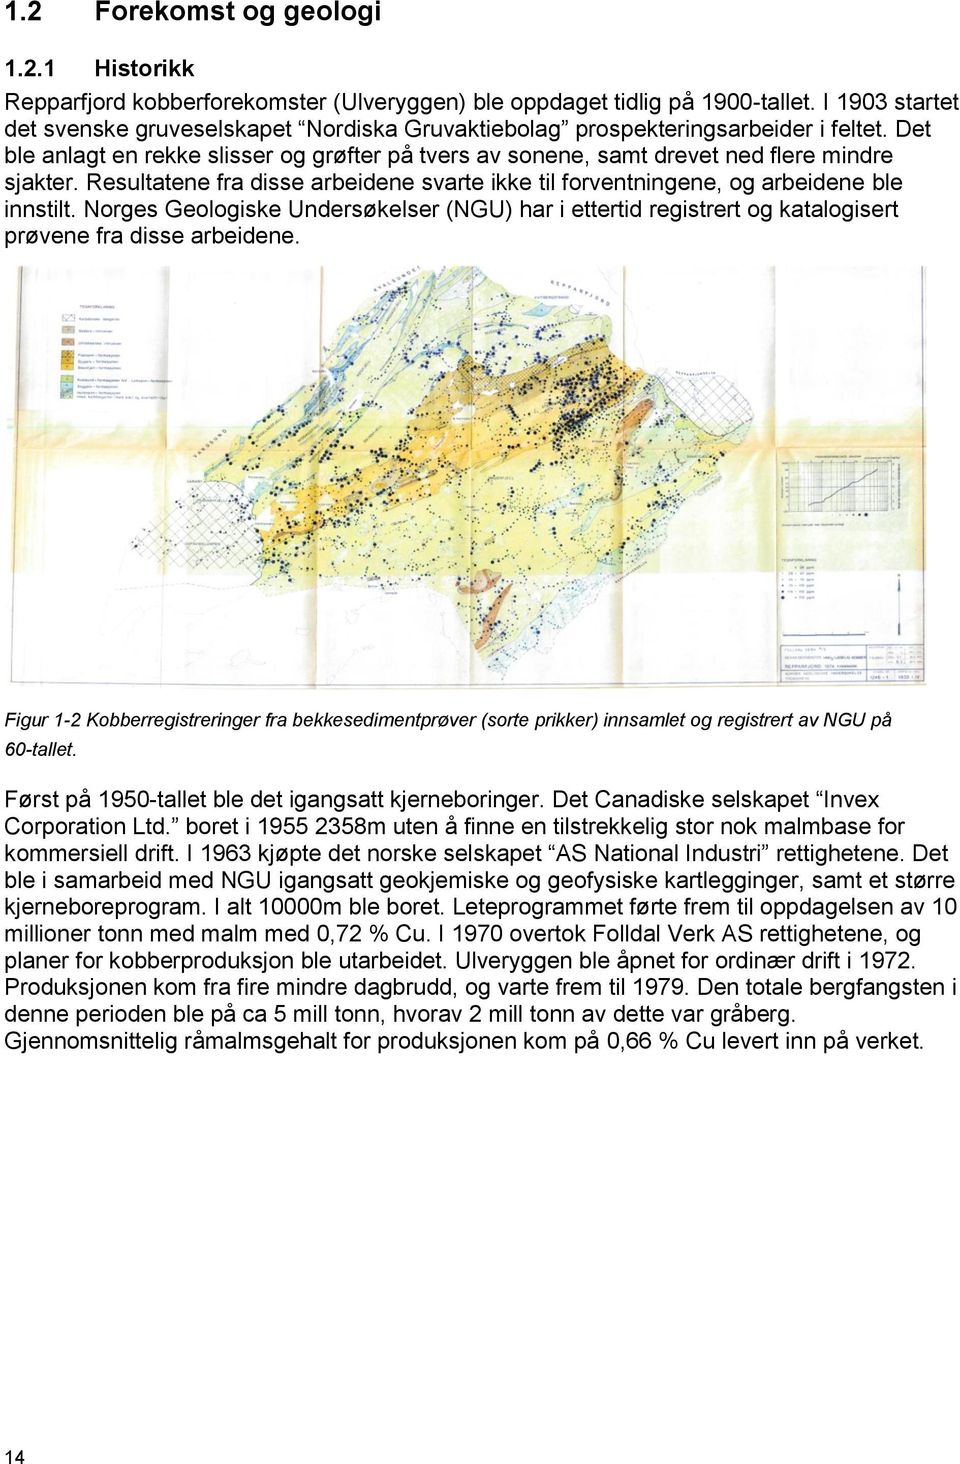 Resultatene fra disse arbeidene svarte ikke til forventningene, og arbeidene ble innstilt. Norges Geologiske Undersøkelser (NGU) har i ettertid registrert og katalogisert prøvene fra disse arbeidene.